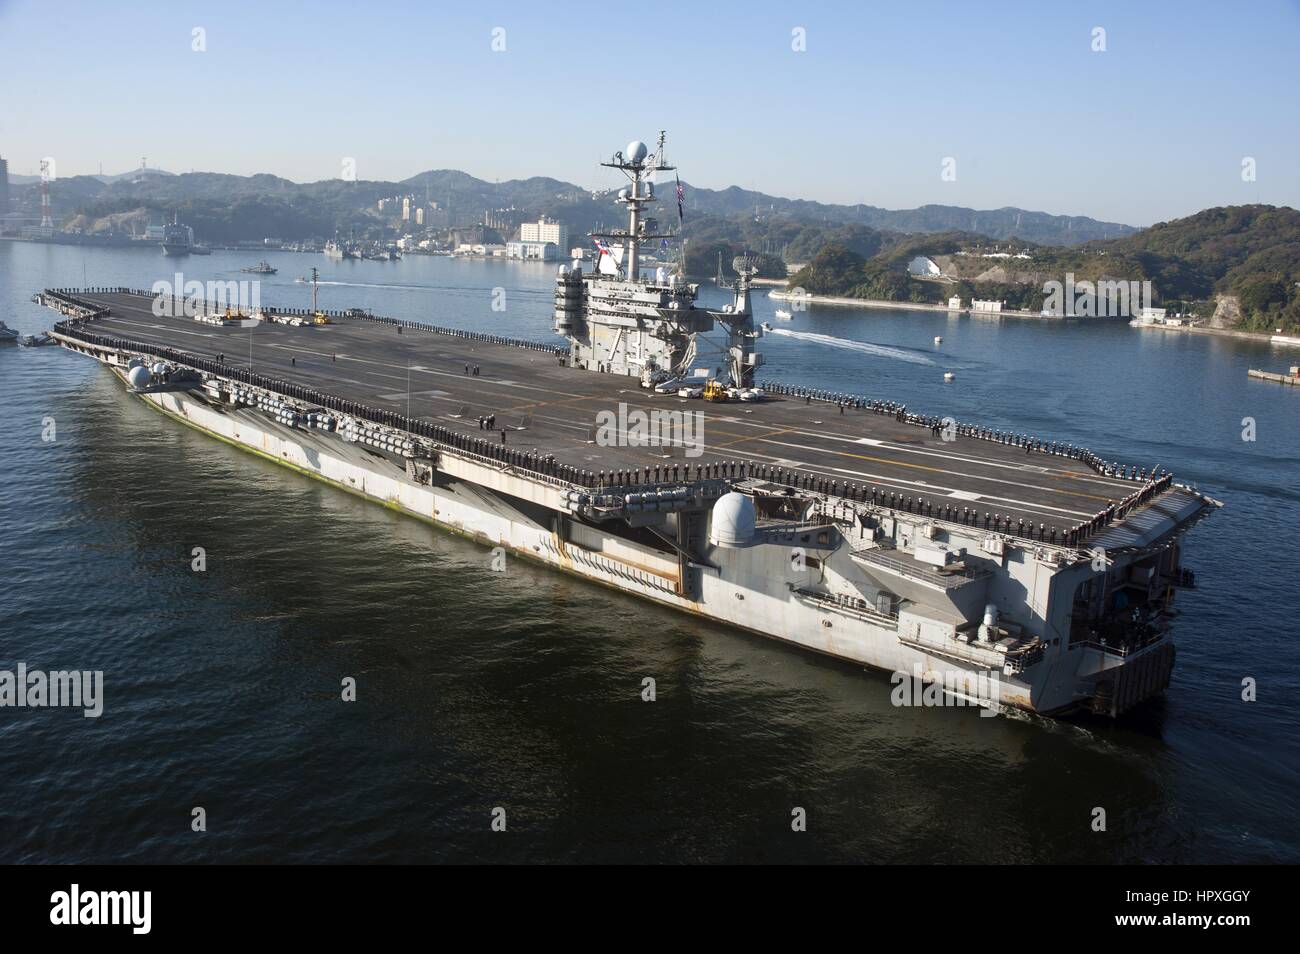 La portaerei USS George Washington transita per la Baia di Tokyo per la sua posizione di funzionamento di Yokosuka, Giappone, dopo aver completato la sua pattuglia 2012, Oceano Pacifico, 20 novembre 2012. Immagine cortesia mi helle N. Rasmusson/US Navy. Foto Stock